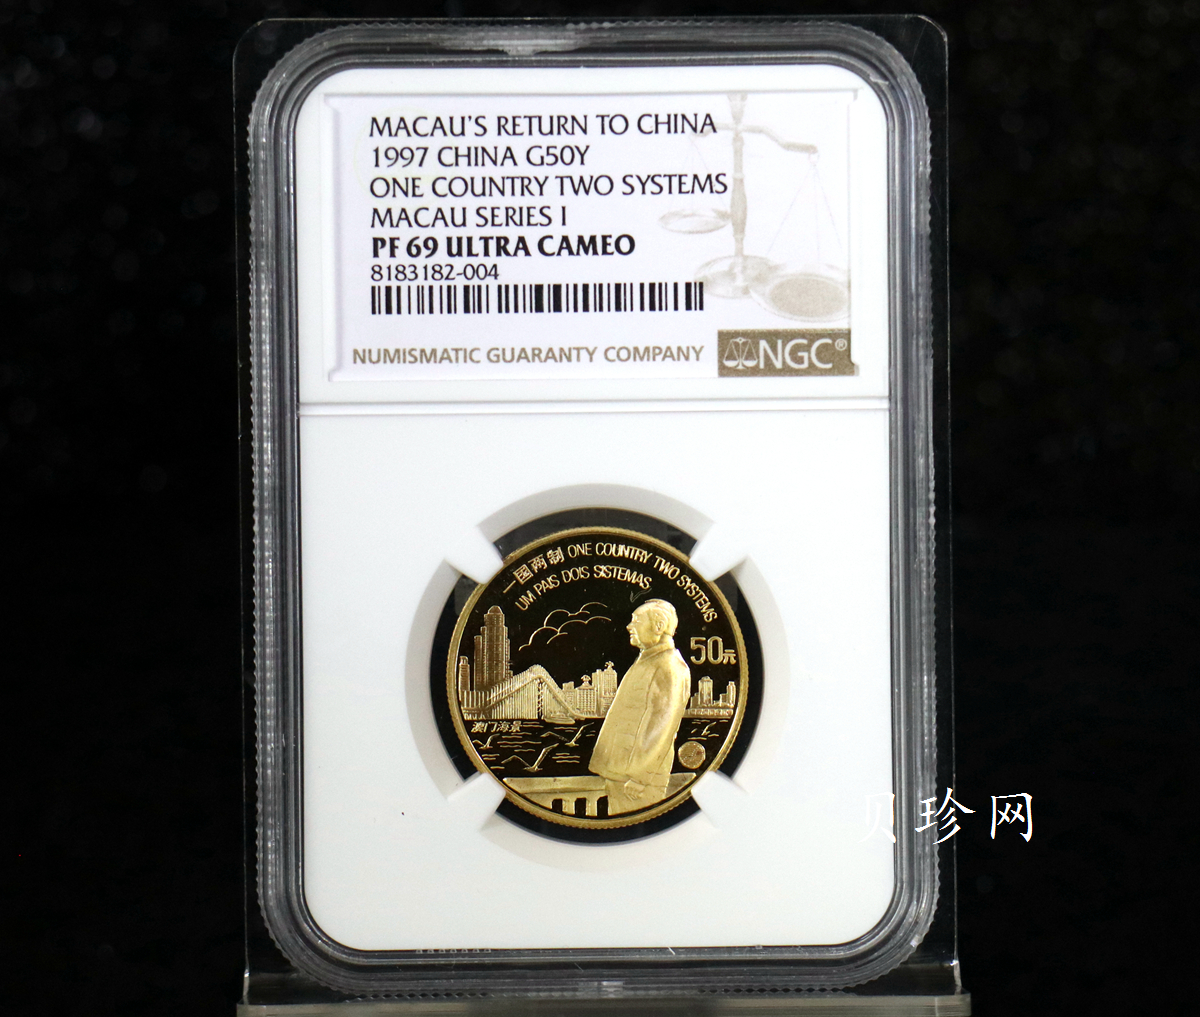 【971002】1997年澳门回归祖国金银纪念币（第1组）-邓小平1/2盎司精制金币